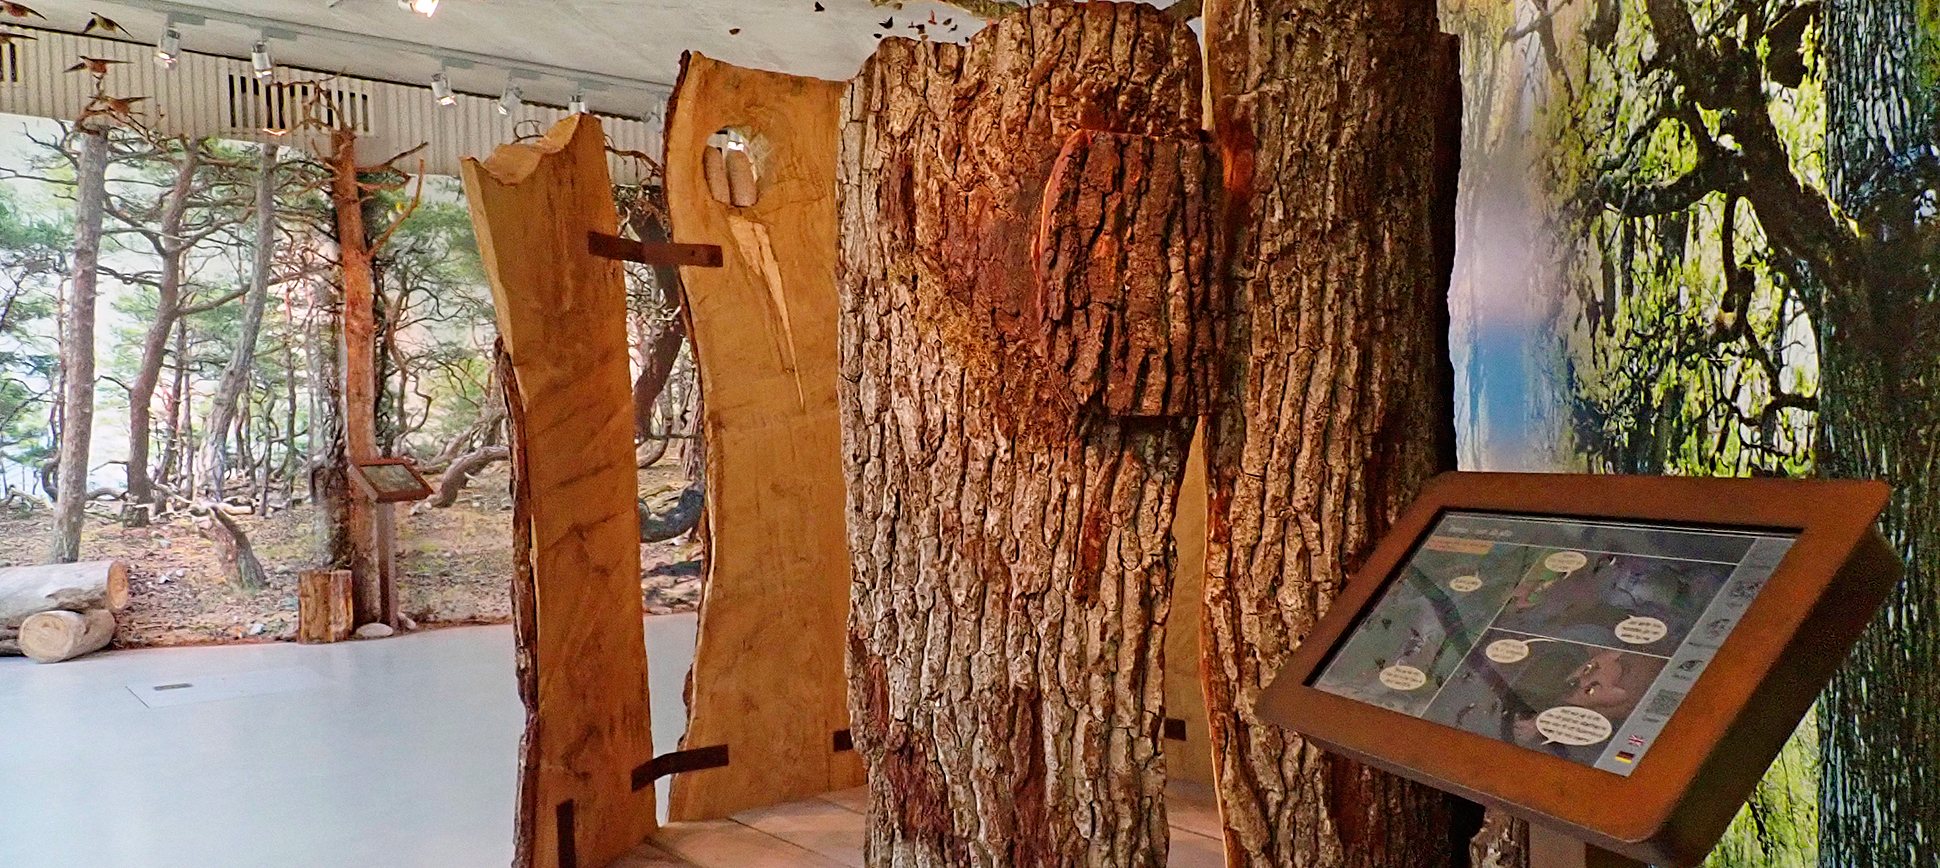 Del av utställningen i besökscentret naturum Trollskogen, på norra Öland.